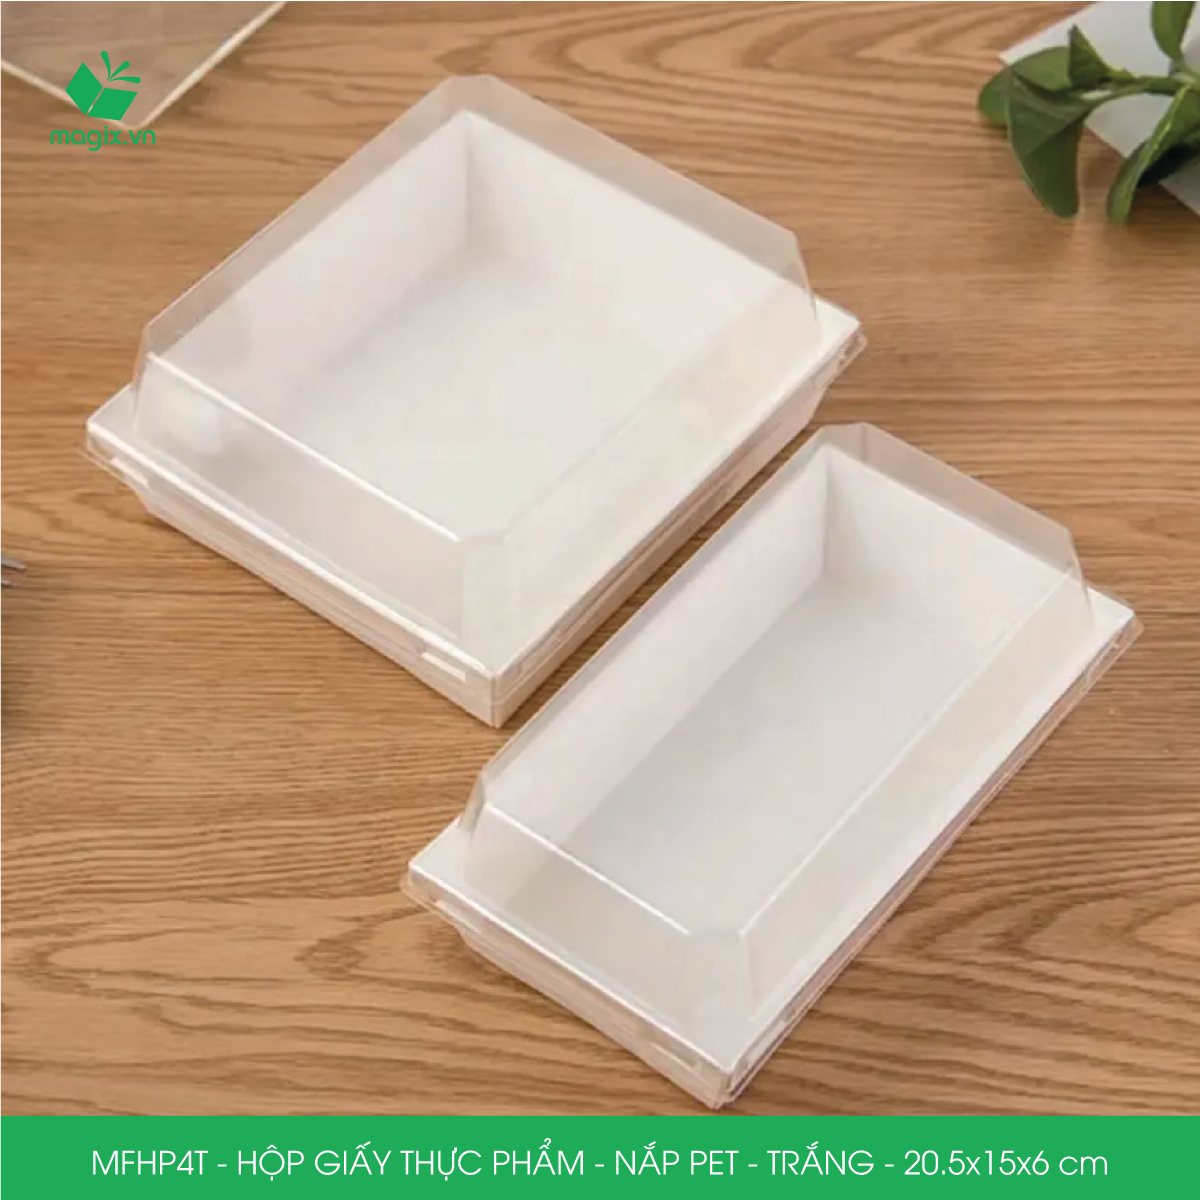 Hình ảnh MFHP4T - 20.5x15x6 cm - 100 hộp giấy thực phẩm màu trắng nắp Pet, hộp giấy chữ nhật đựng thức ăn, hộp bánh nắp trong